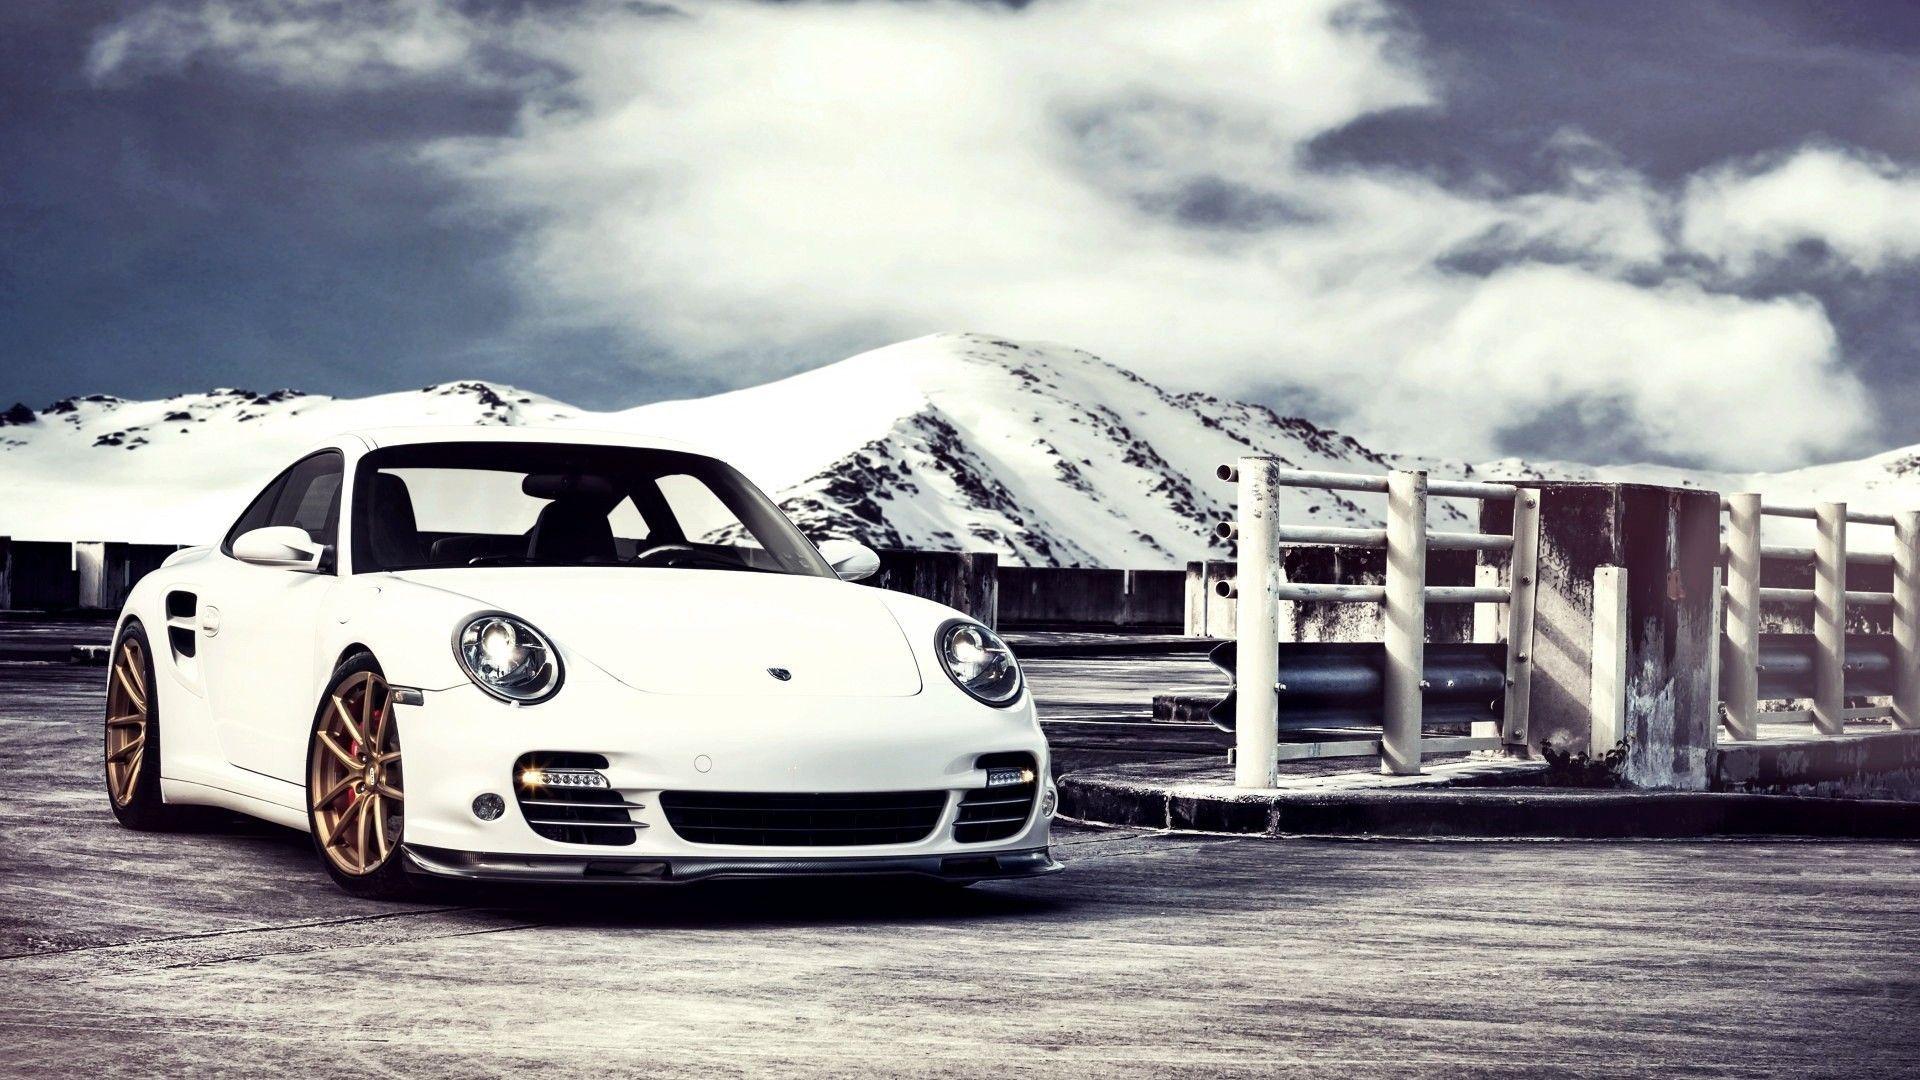 Excellent 2K Porsche Wallpapers